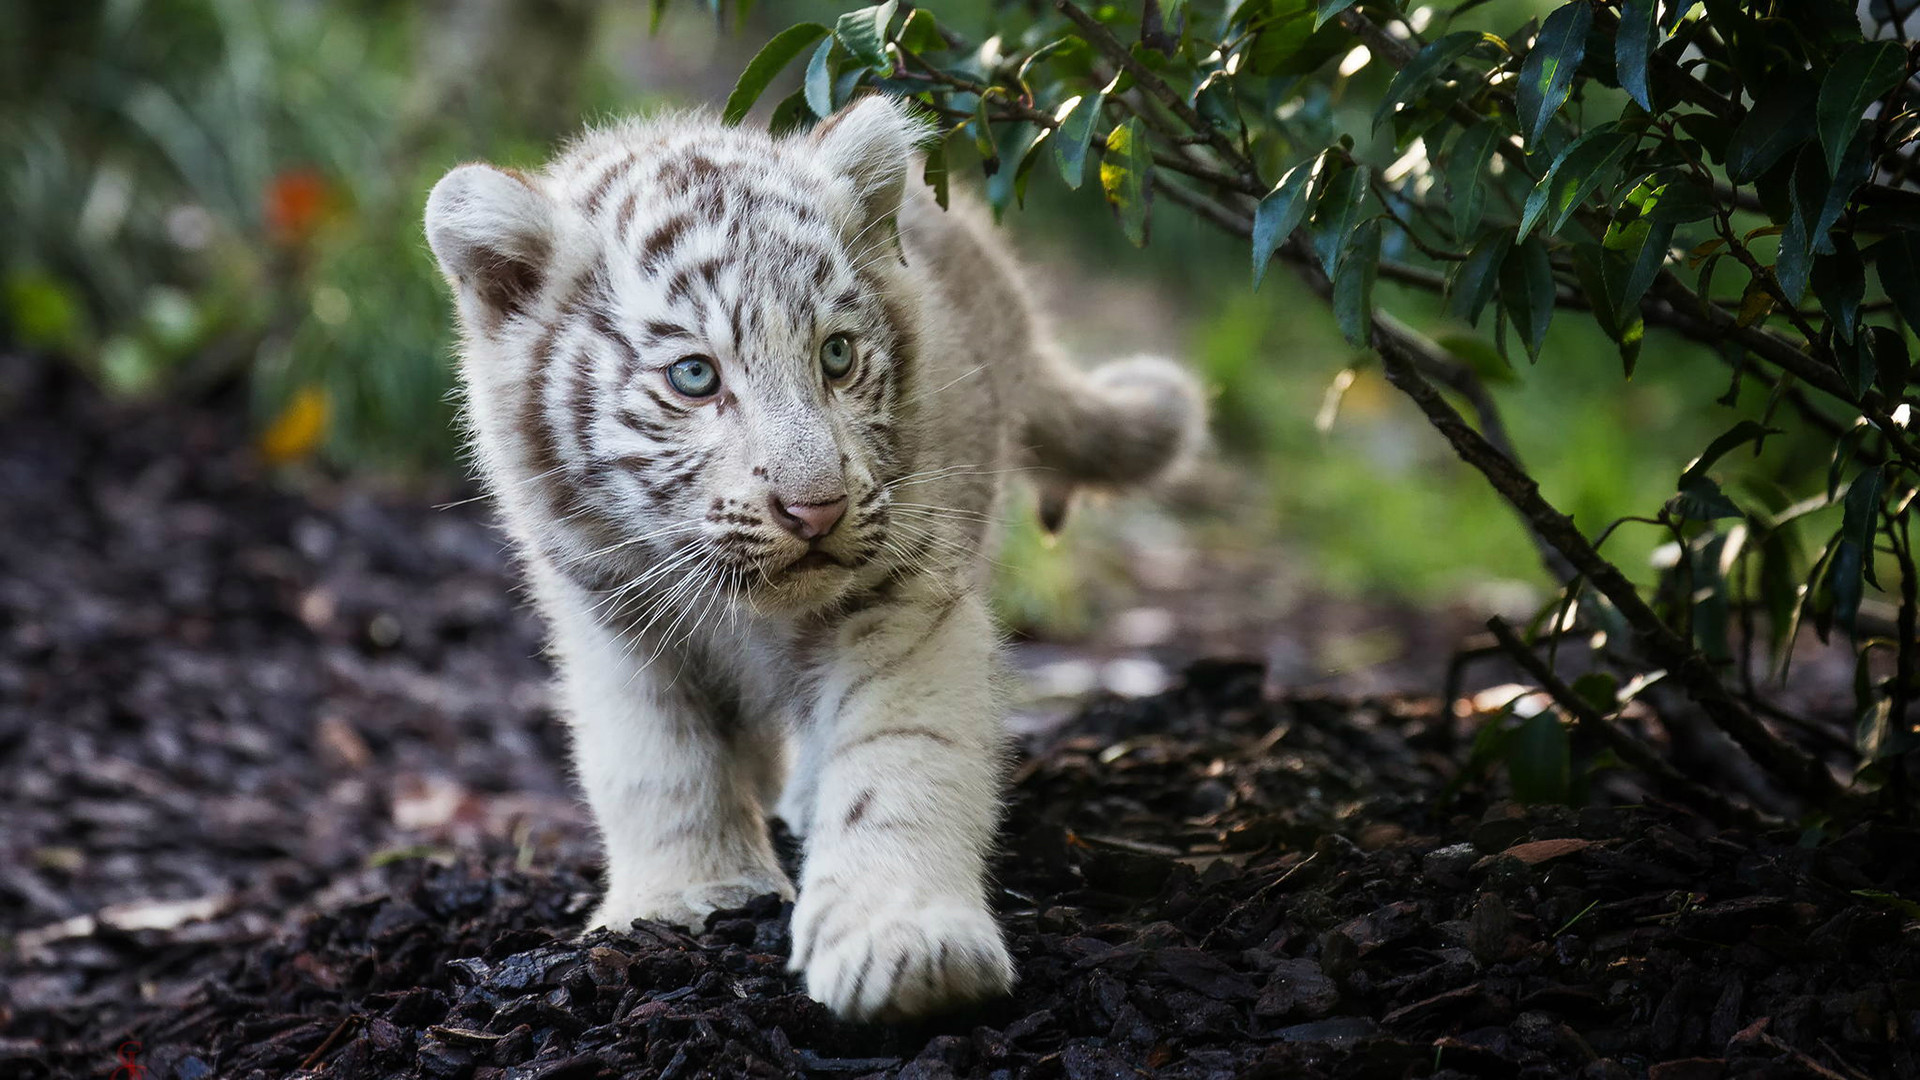 tigre blanc hd fonds d'écran 1080p,faune,félidés,moustaches,animal terrestre,gros chats